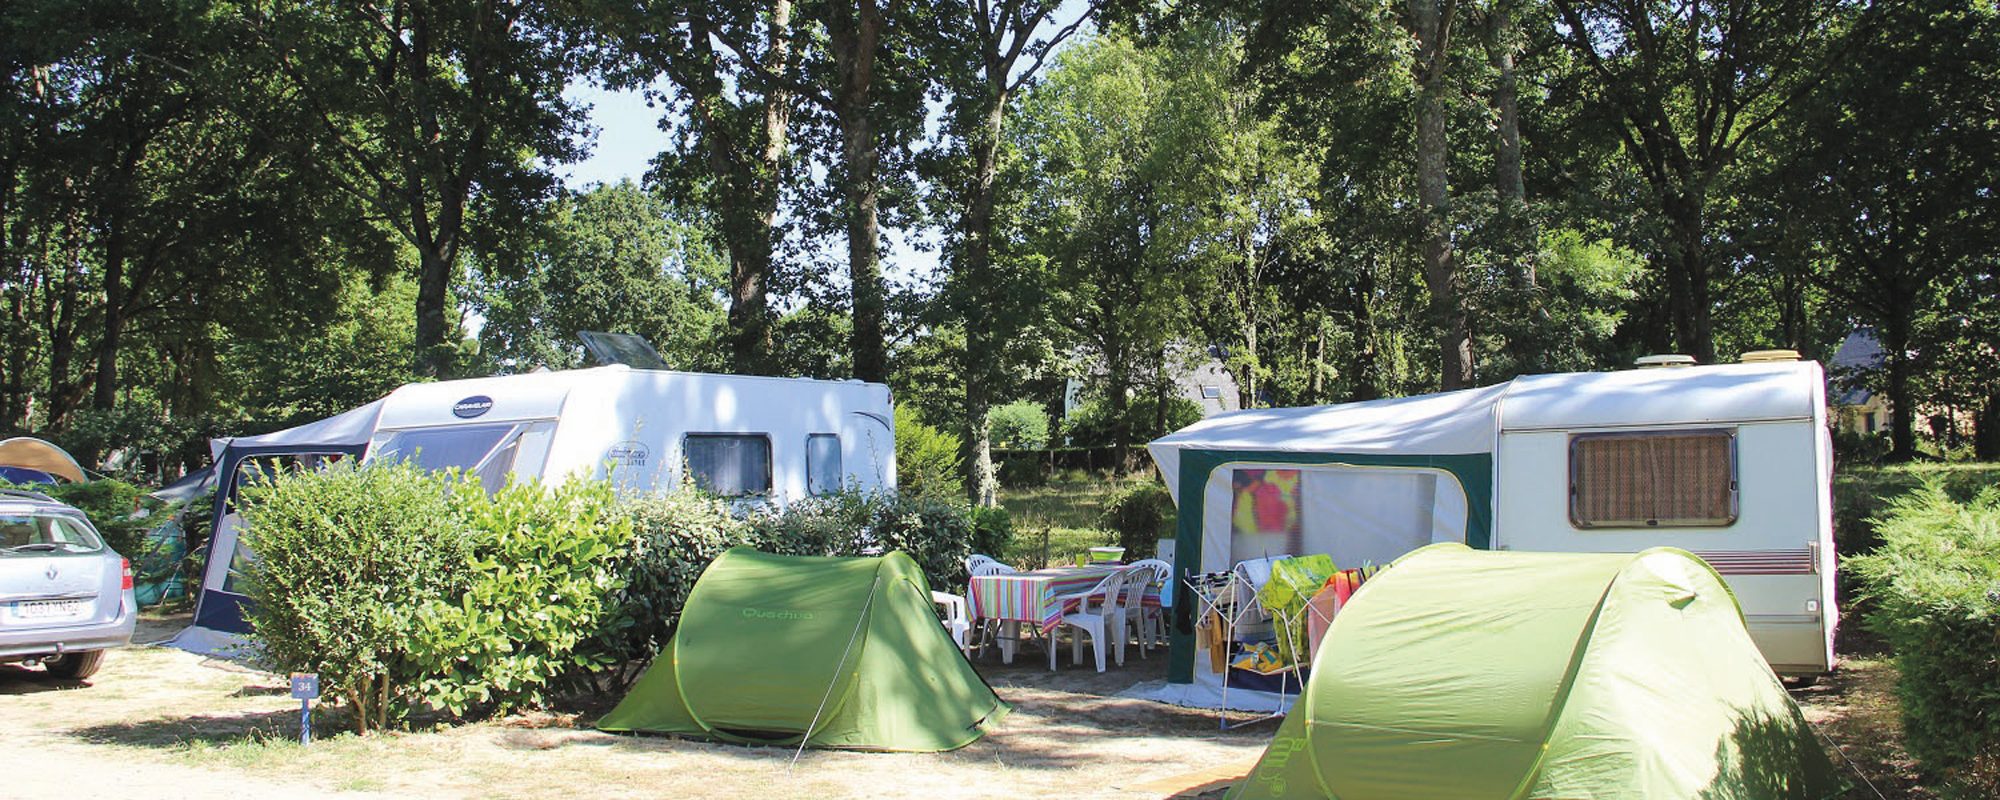 Emplacements Camping à Assérac près de Guérande - Le Domaine de Pont-Mahé